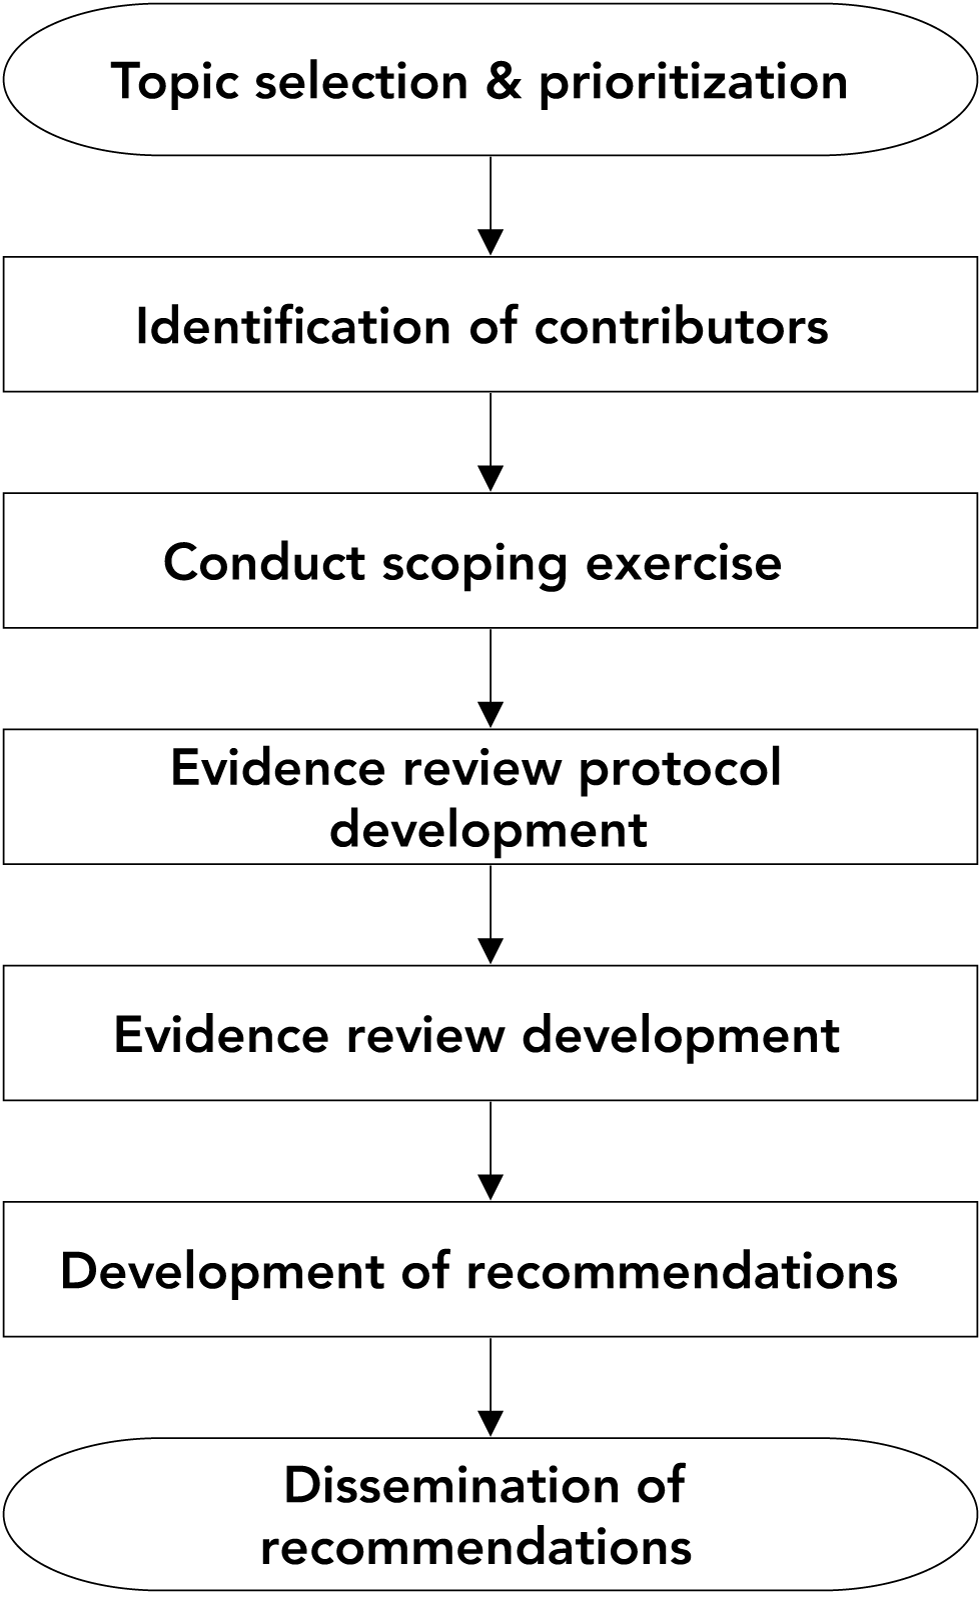 Figure 1: Recommendation development process